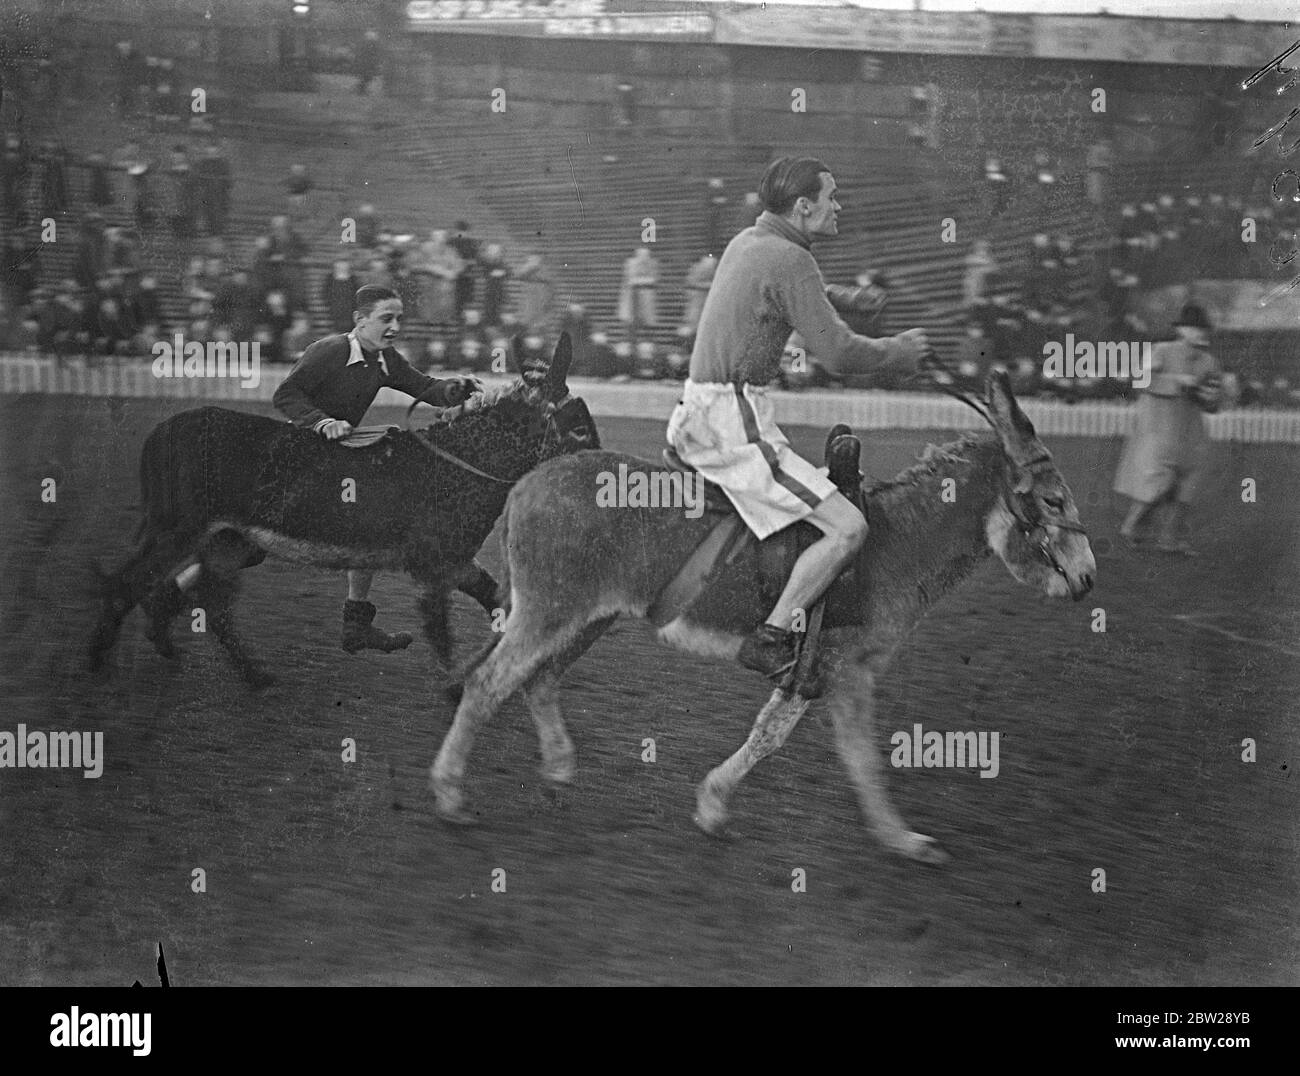 Kings Jockey Fahrten in Donkey Derby. Jockeys, konkurrierten in ihrem jährlichen Esel Derby. Jockeys, konkurrierten in ihrem jährlichen Esel Derby auf Millwall Football Club Ground, New Cross, nach dem jährlichen Boxer gegen Jockeys Fußballspiel in Hilfe der Nächstenliebe. Die Entfernung betrug 100 Yards. Foto zeigt J Crouch, den Kings Jockey (näher Kamera) alle draußen im Esel Derby, als ein anderer Konkurrent neben seinem Mount läuft. 25. Oktober 1937 Stockfoto